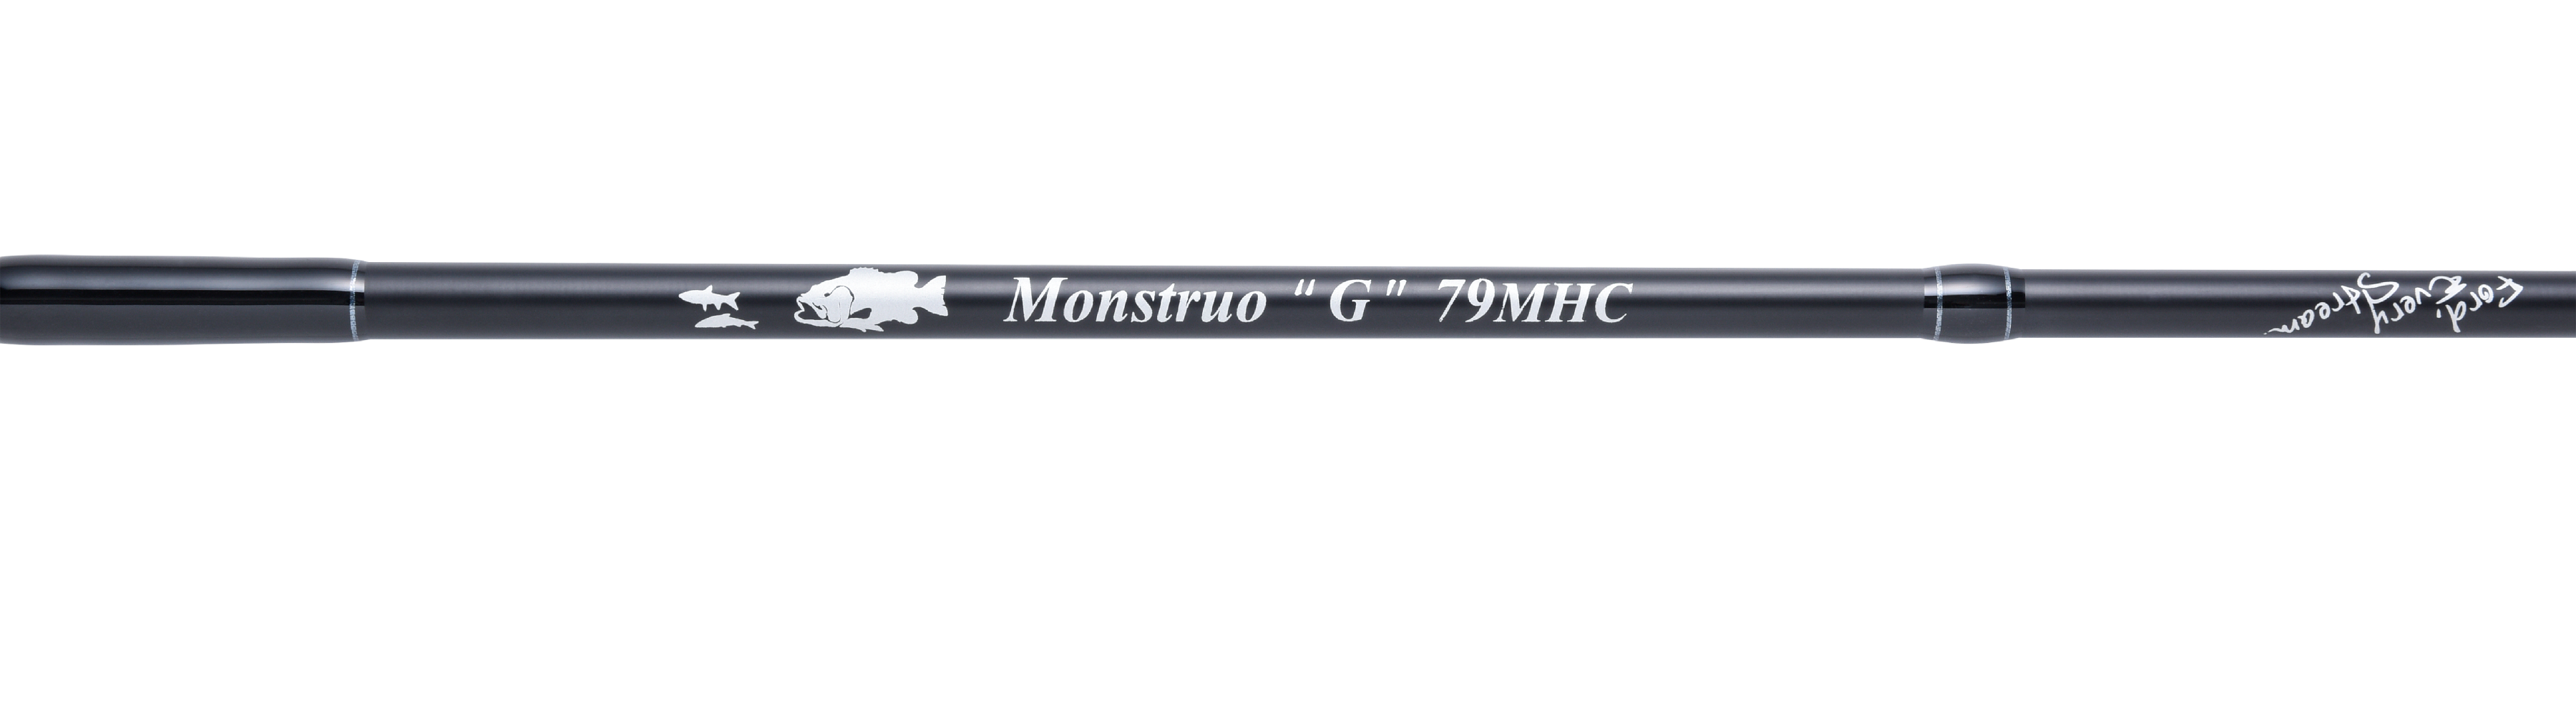 Monstruo”G” 79MHC | グリップ